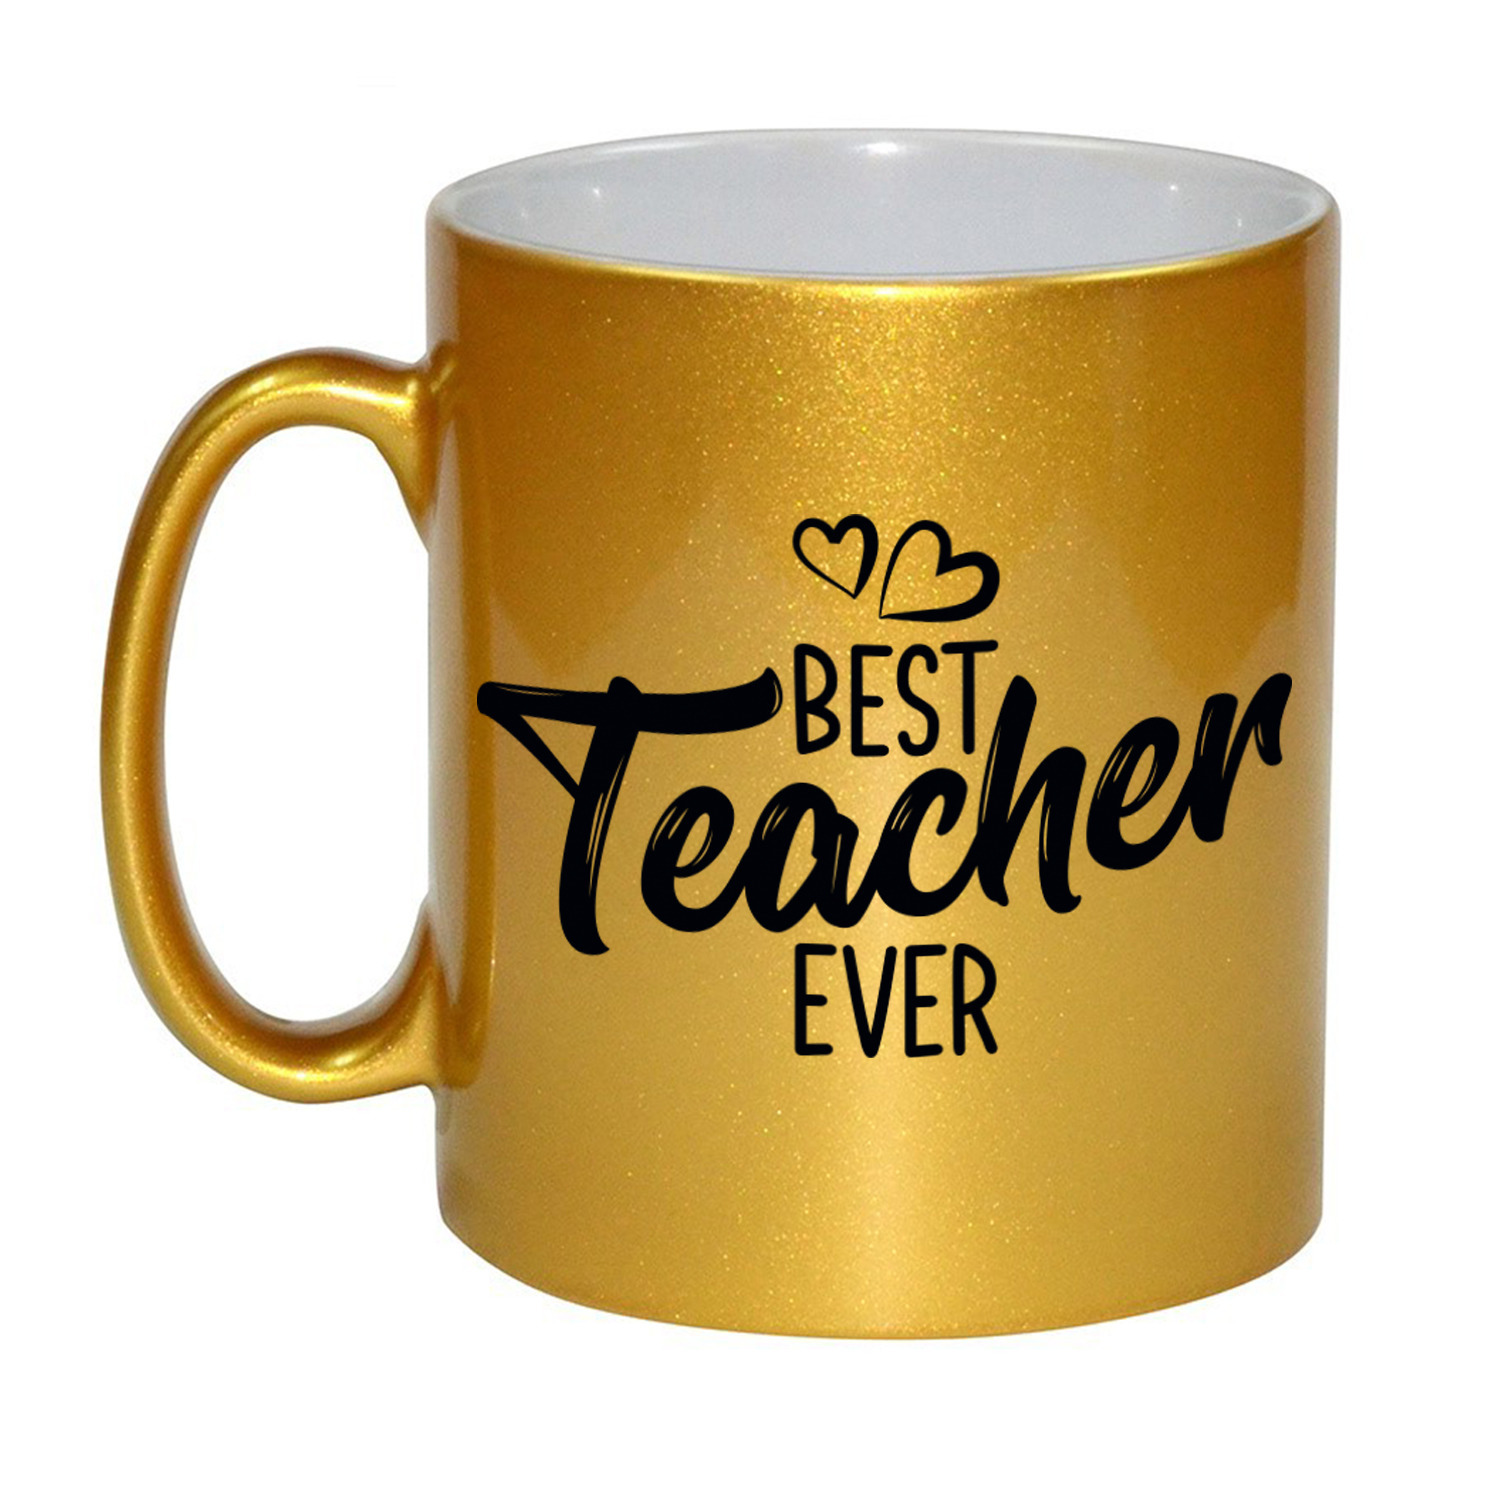 Best teacher ever leraren cadeau mok / beker goud